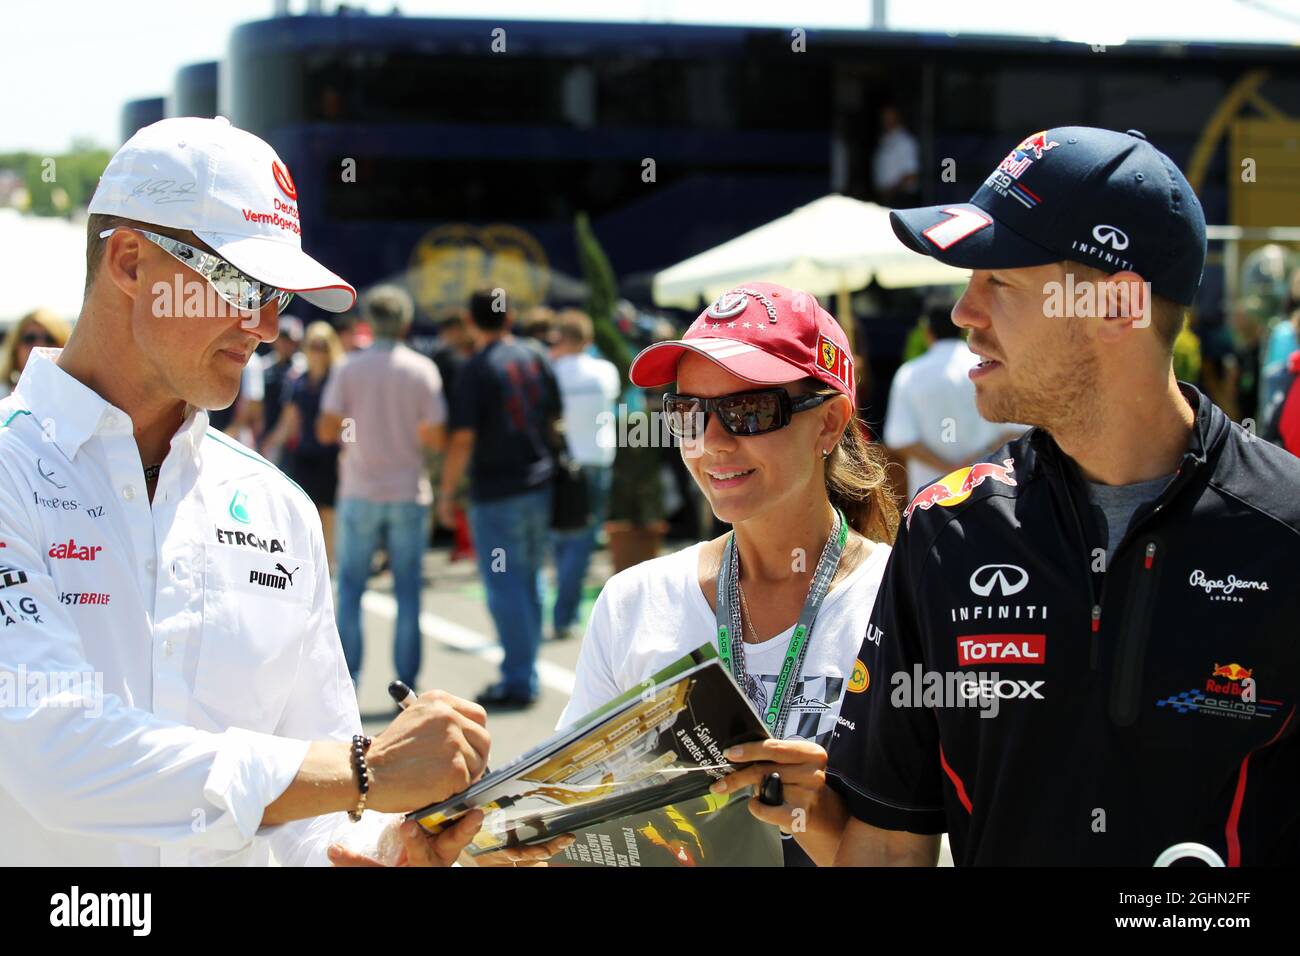 29.07.2012. Budapest, Hungary. Motorsports: FIA Formula One World